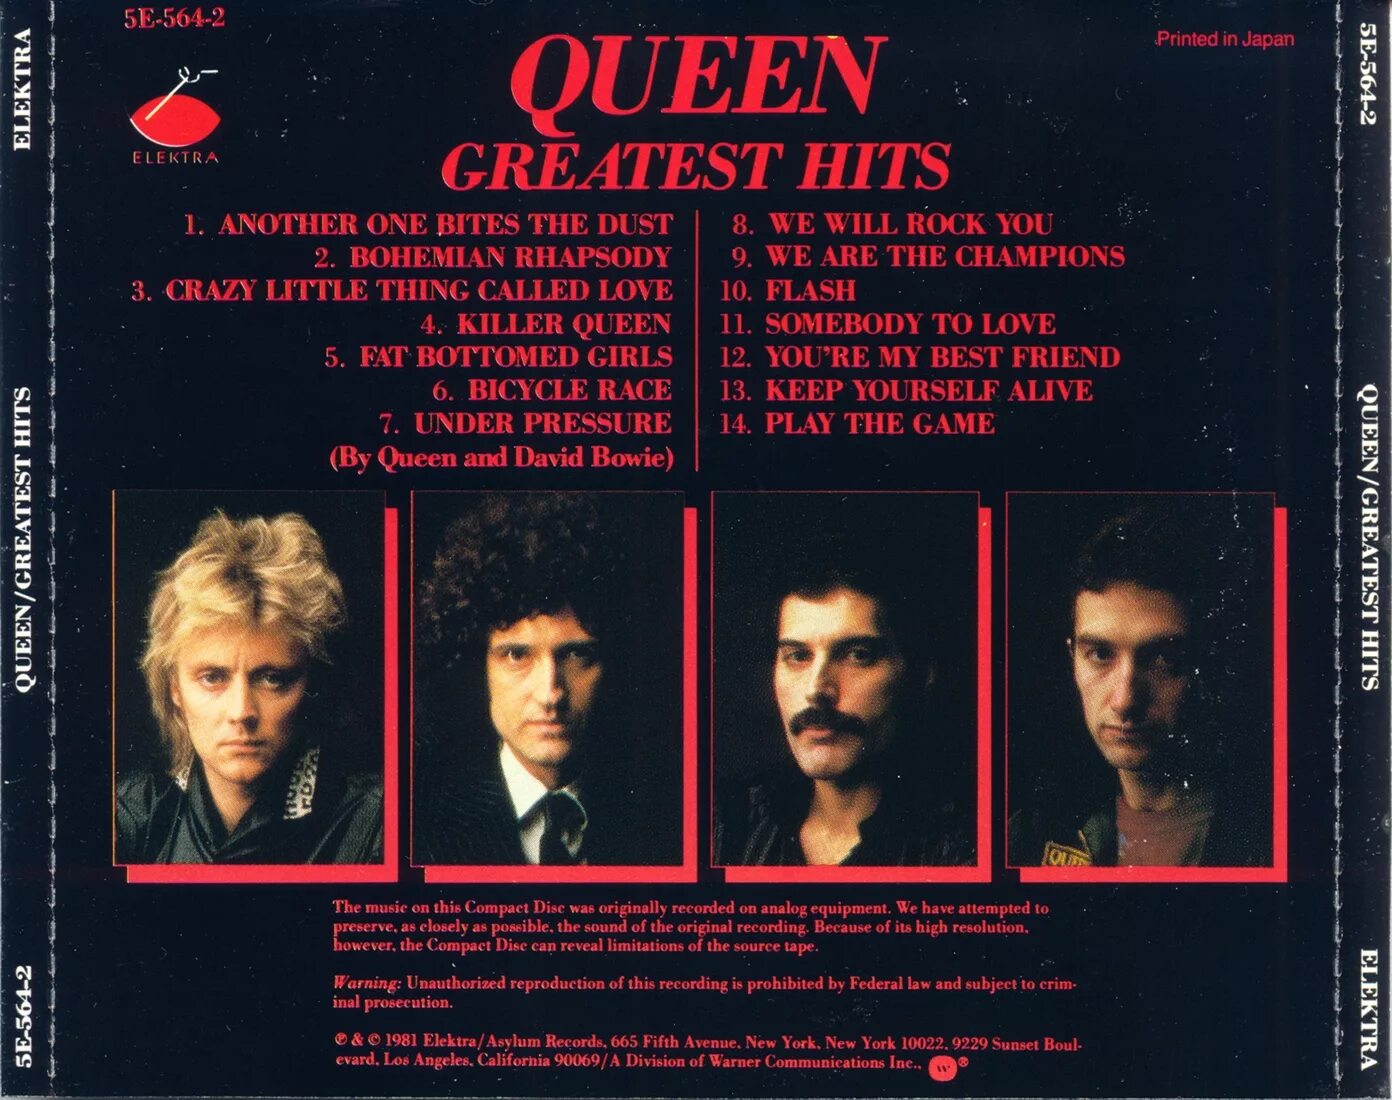 Queen best hits. Queen 1981. Queen Greatest Hits 1981. Queen Greatest Hits 1 CD обложка обложка. Queen Greatest Hits Балкантон 1981 год.